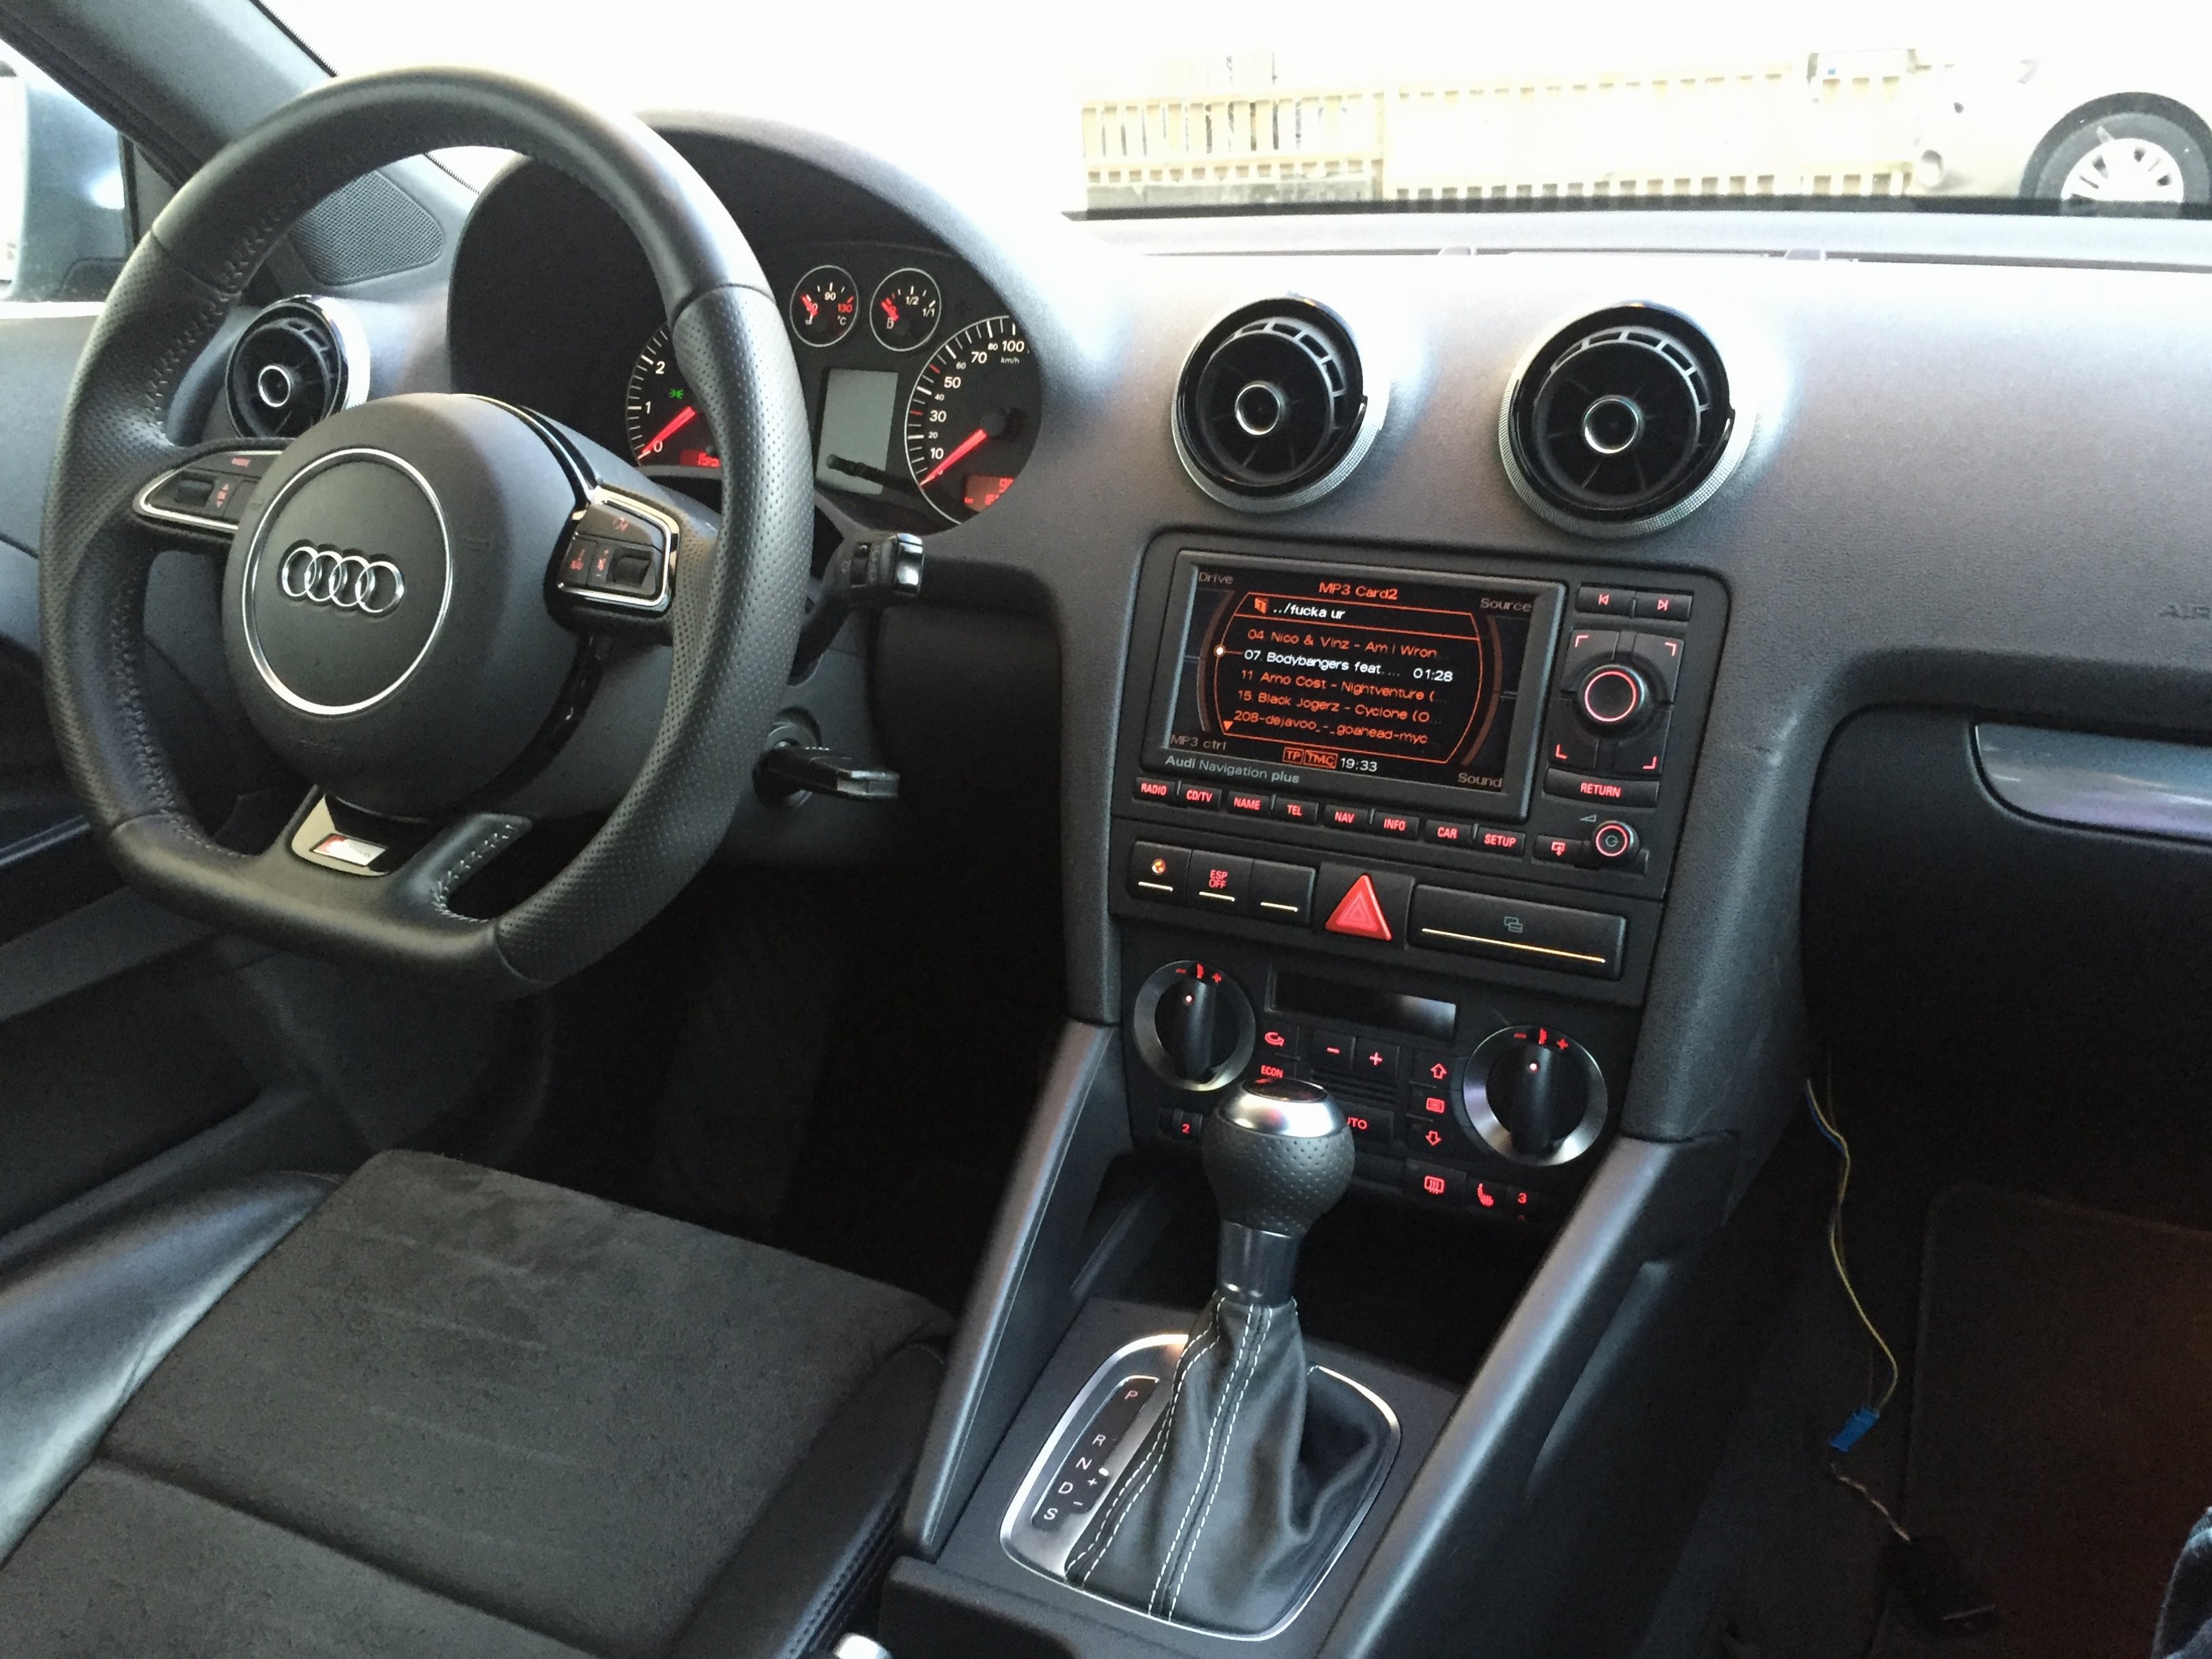 Audi A3 8p Inside